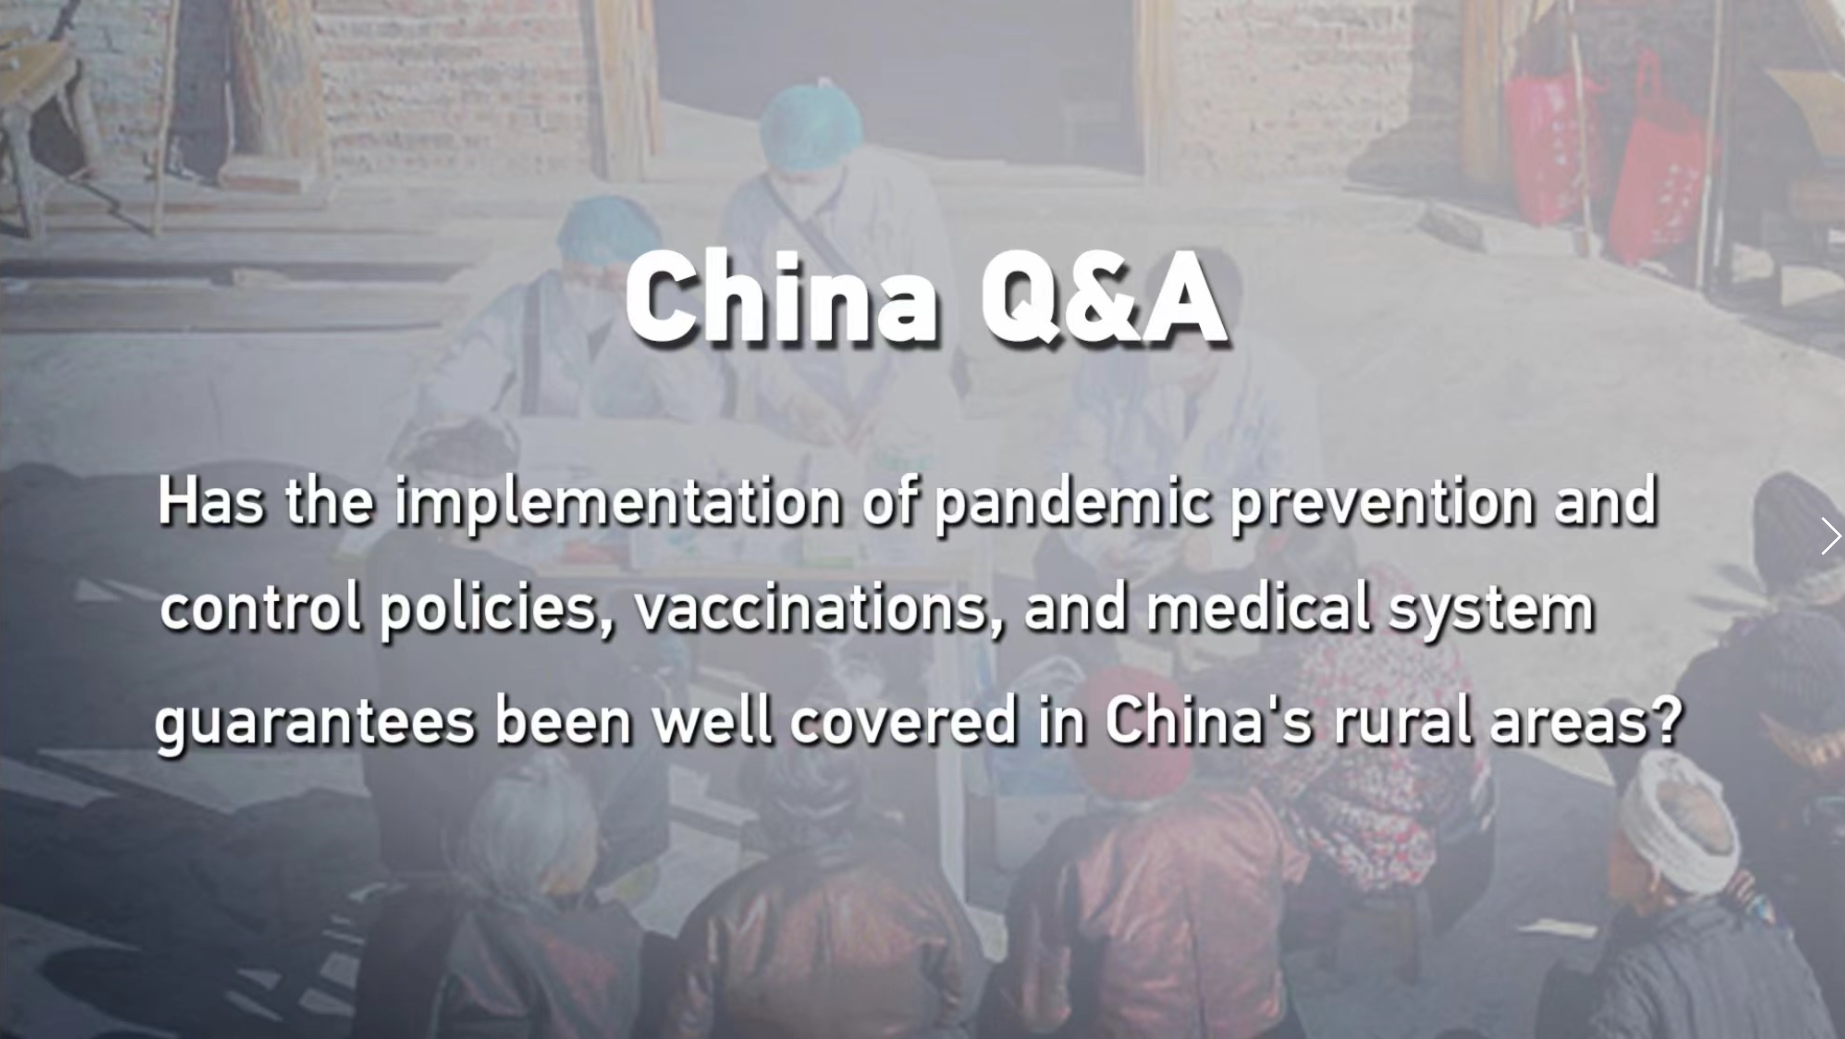 Jaka wygląda kontrola pandemii i usługi medyczne na obszarach wiejskim w Chinach? (odcinek 10)